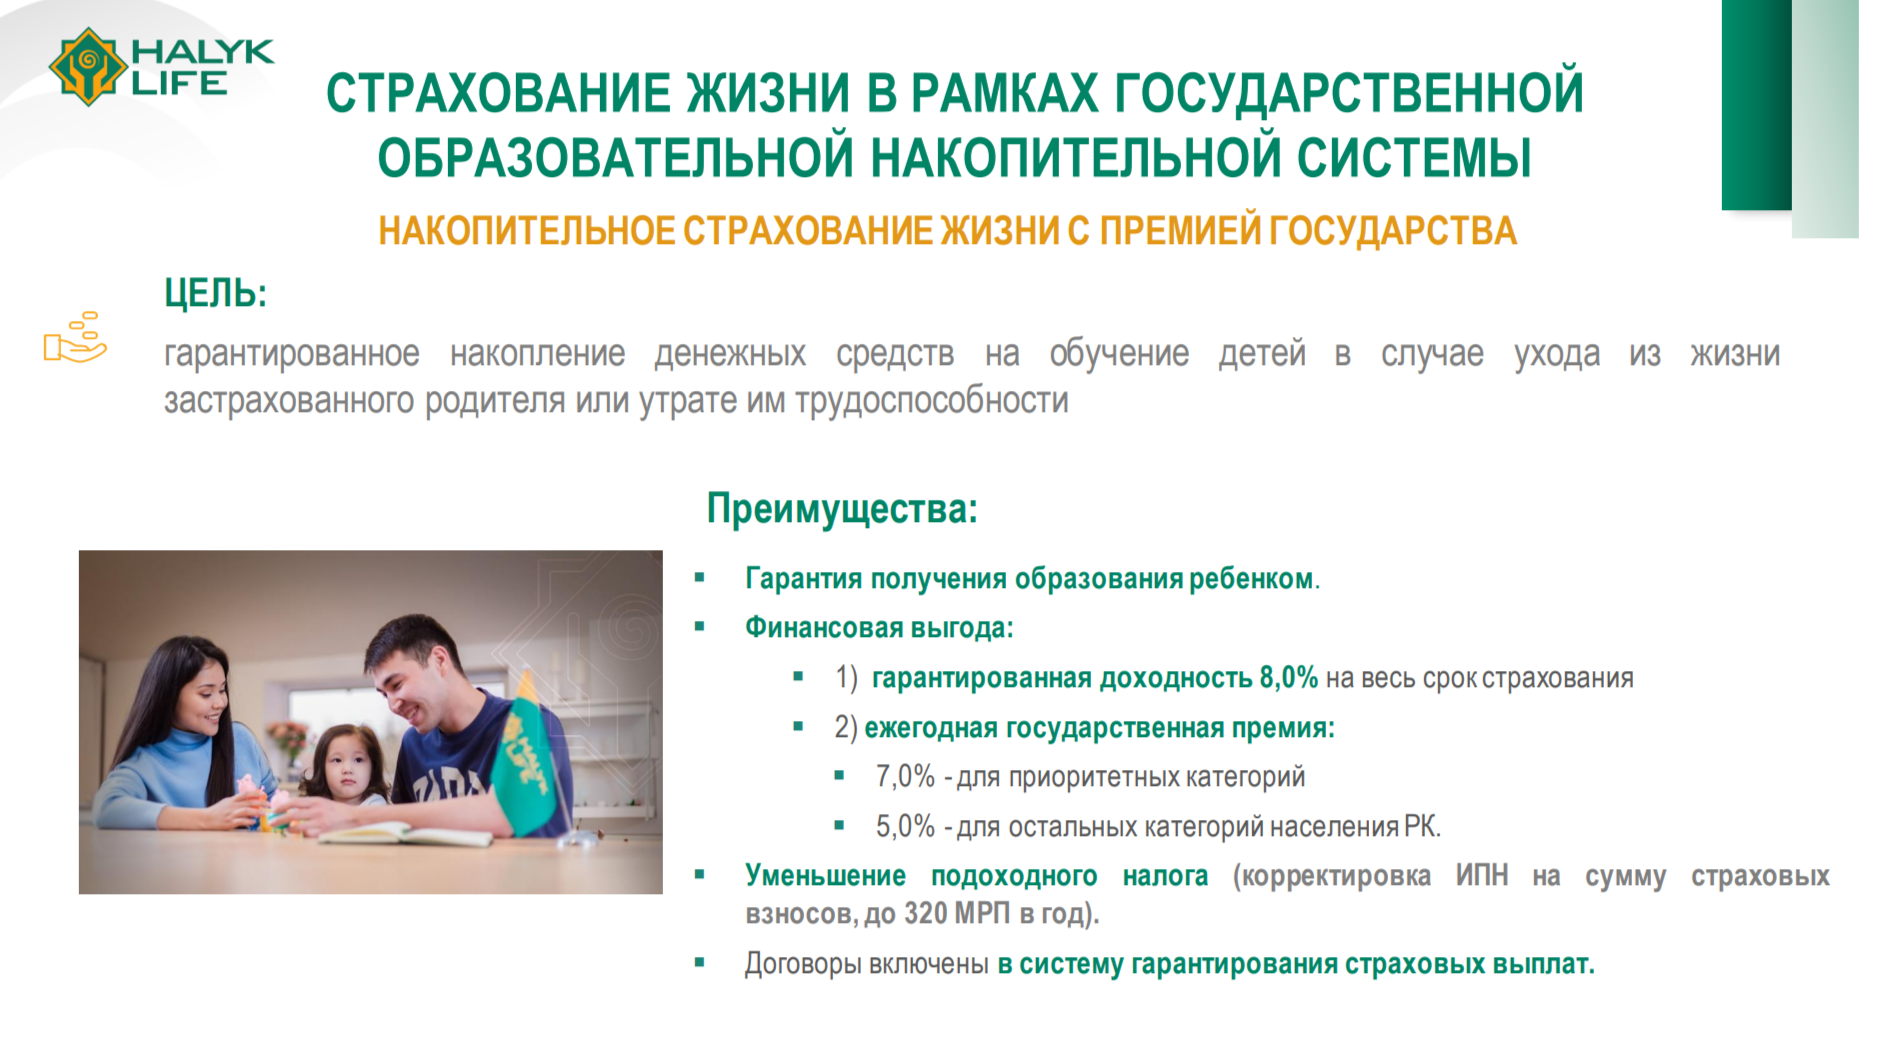 Что сдерживает развитие рынка страхования жизни в Казахстане 2959628 — Kapital.kz 